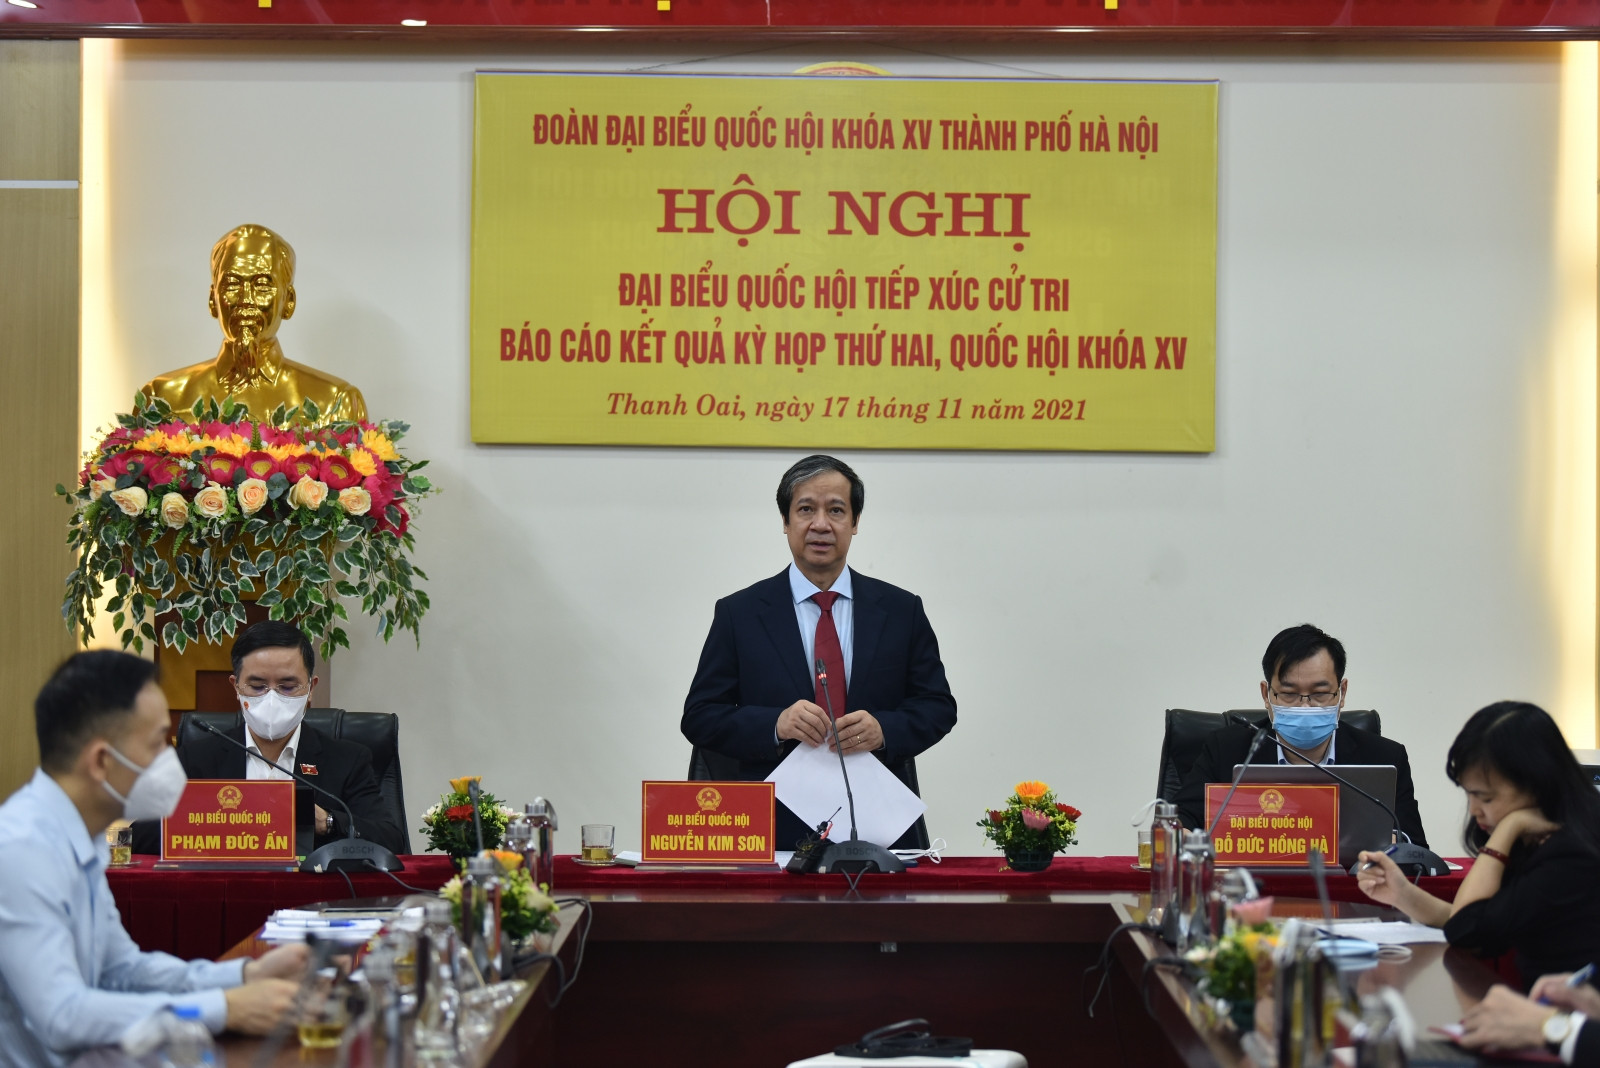 Bộ trưởng Bộ GD&ĐT Nguyễn Kim Sơn phát biểu tại hội nghị Đại biểu Quốc hội tiếp xúc cử tri báo cáo kết quả Kỳ họp thứ 2, Quốc hội khóa XV.